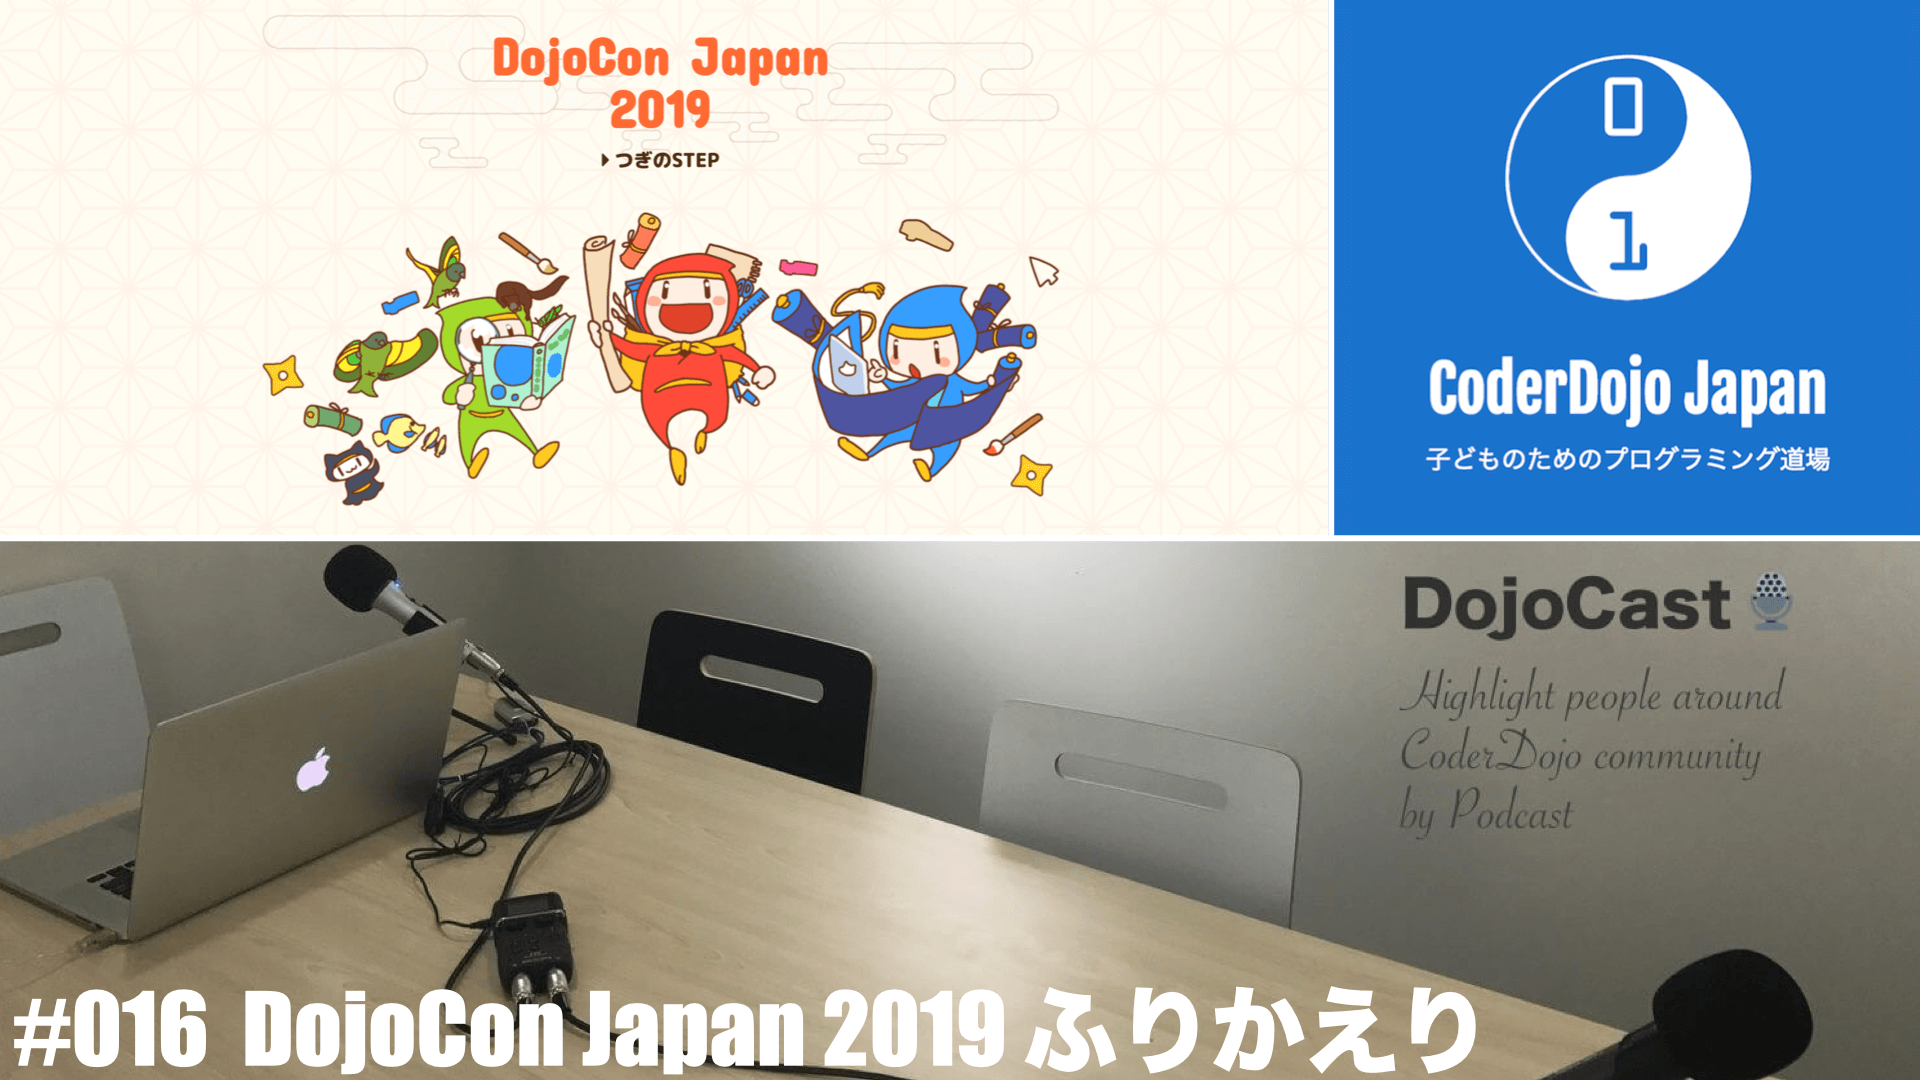 DojoCon Japan 2019 Cover Photo